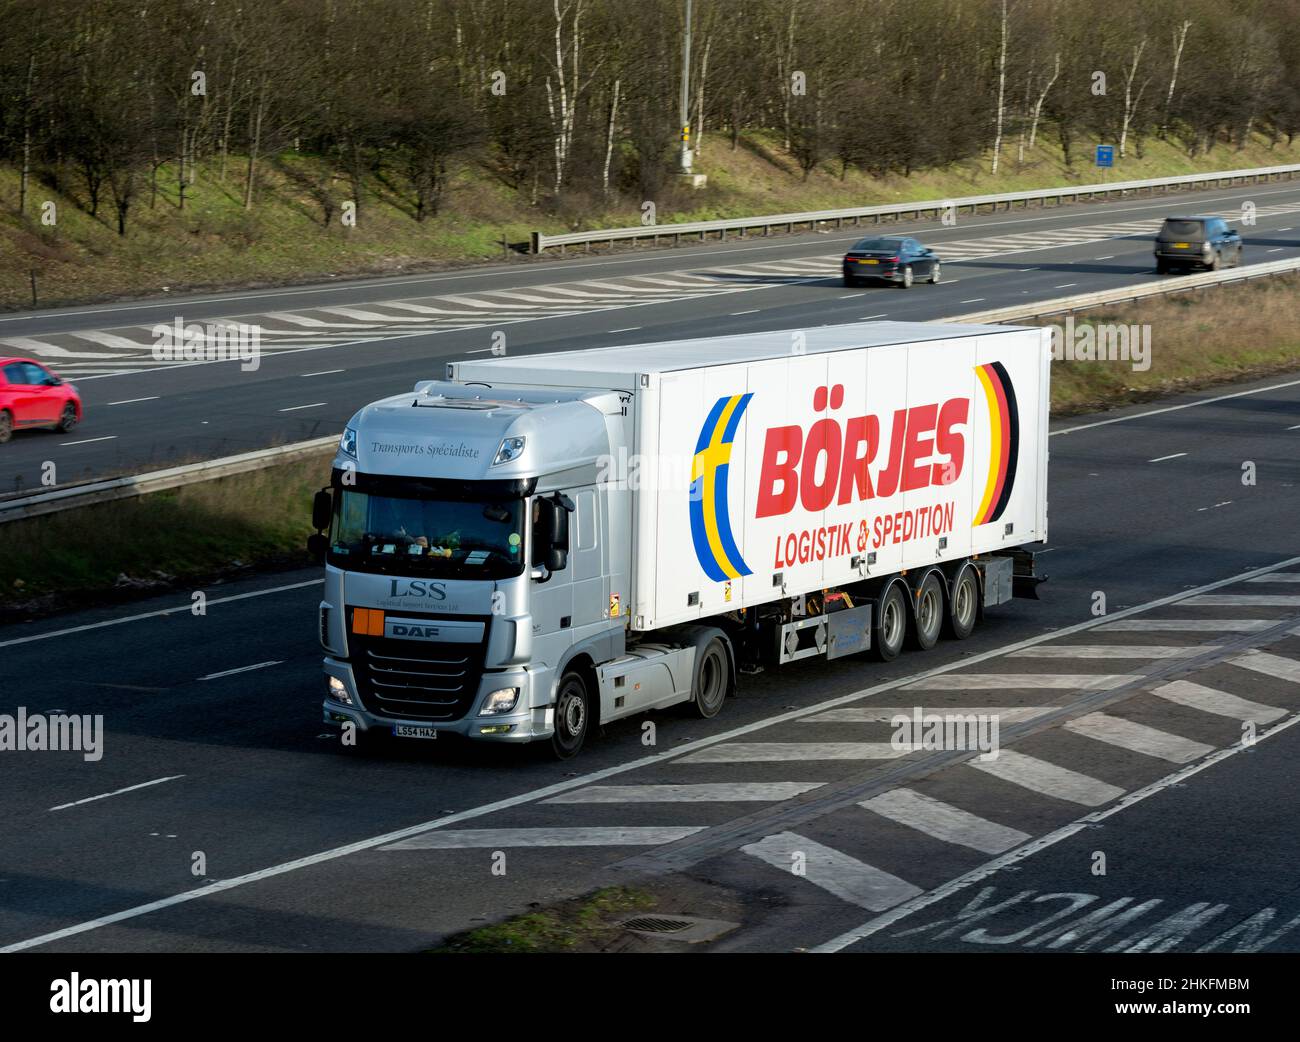 Cabina de camión LSS con remolque Borjes, autopista M40, Warwickshire, Reino Unido Foto de stock